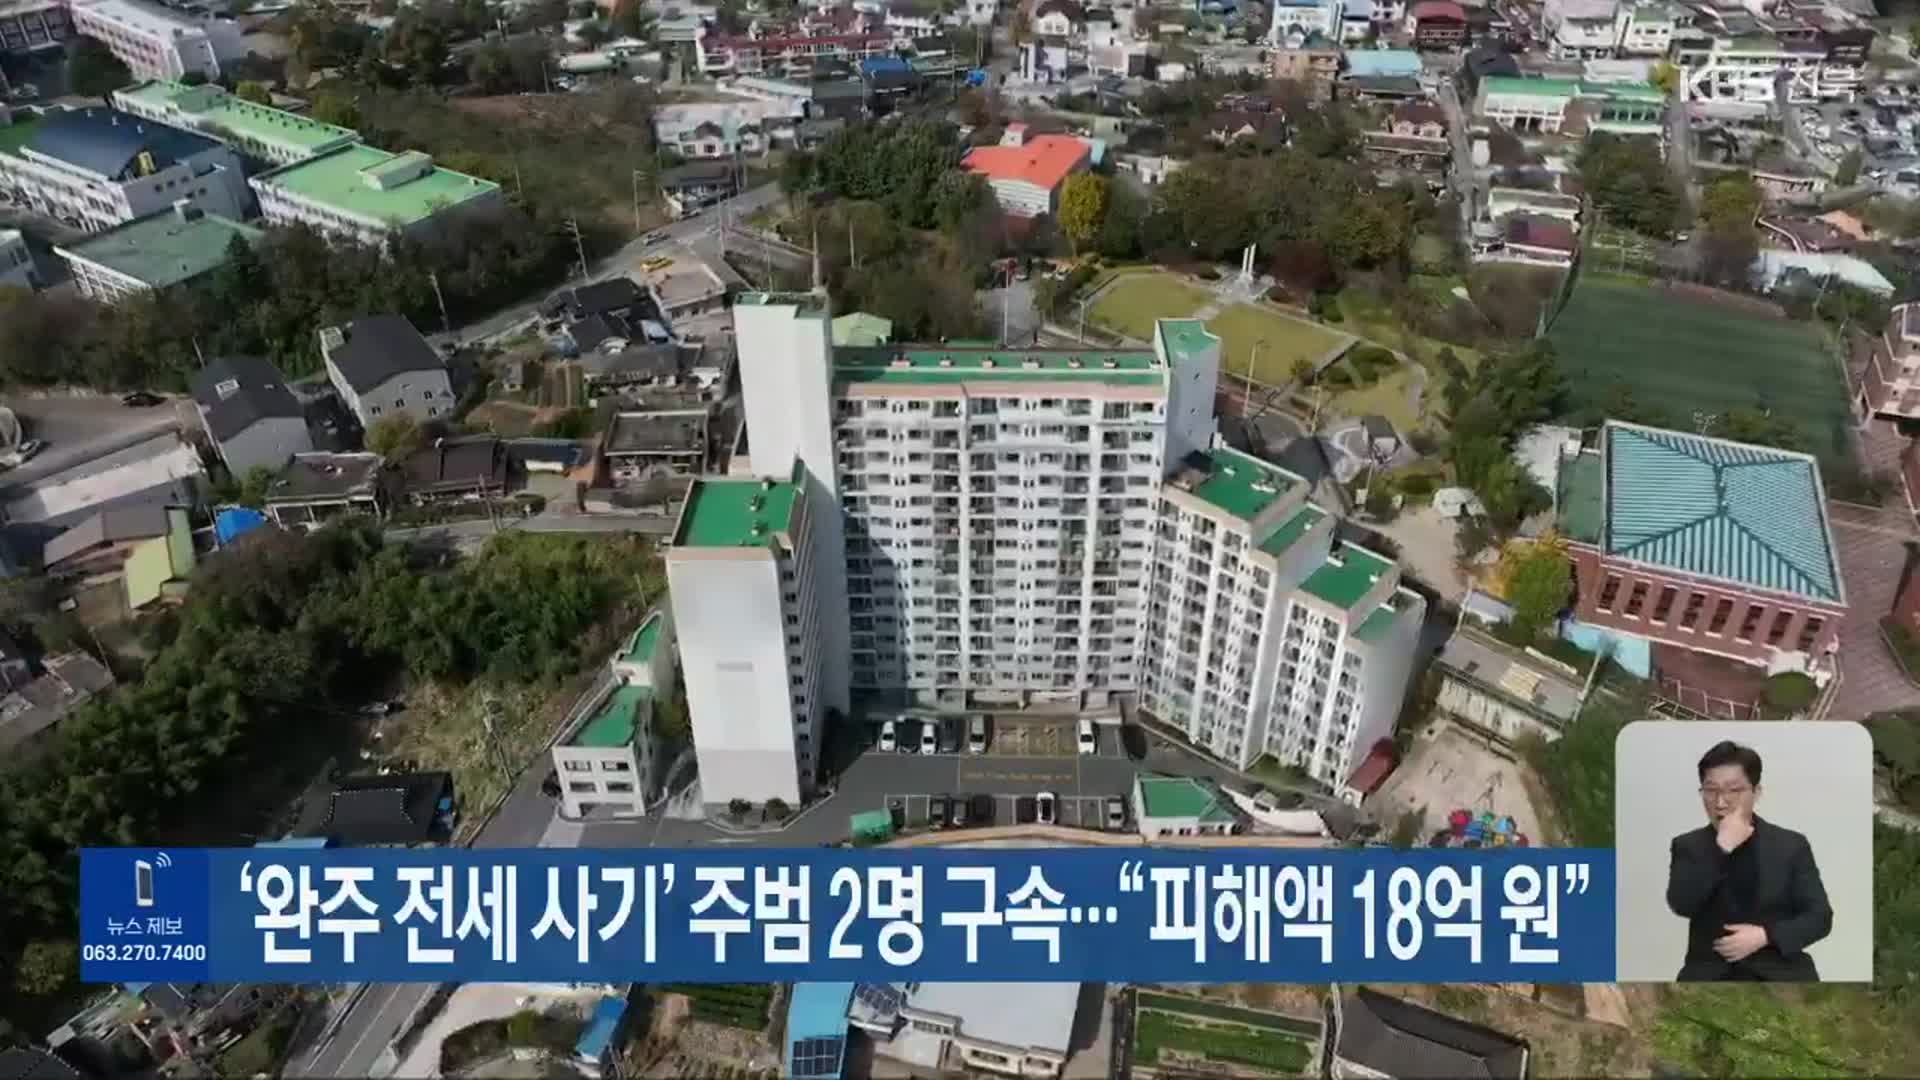 ‘완주 전세 사기’ 주범 2명 구속…“피해액 18억 원”